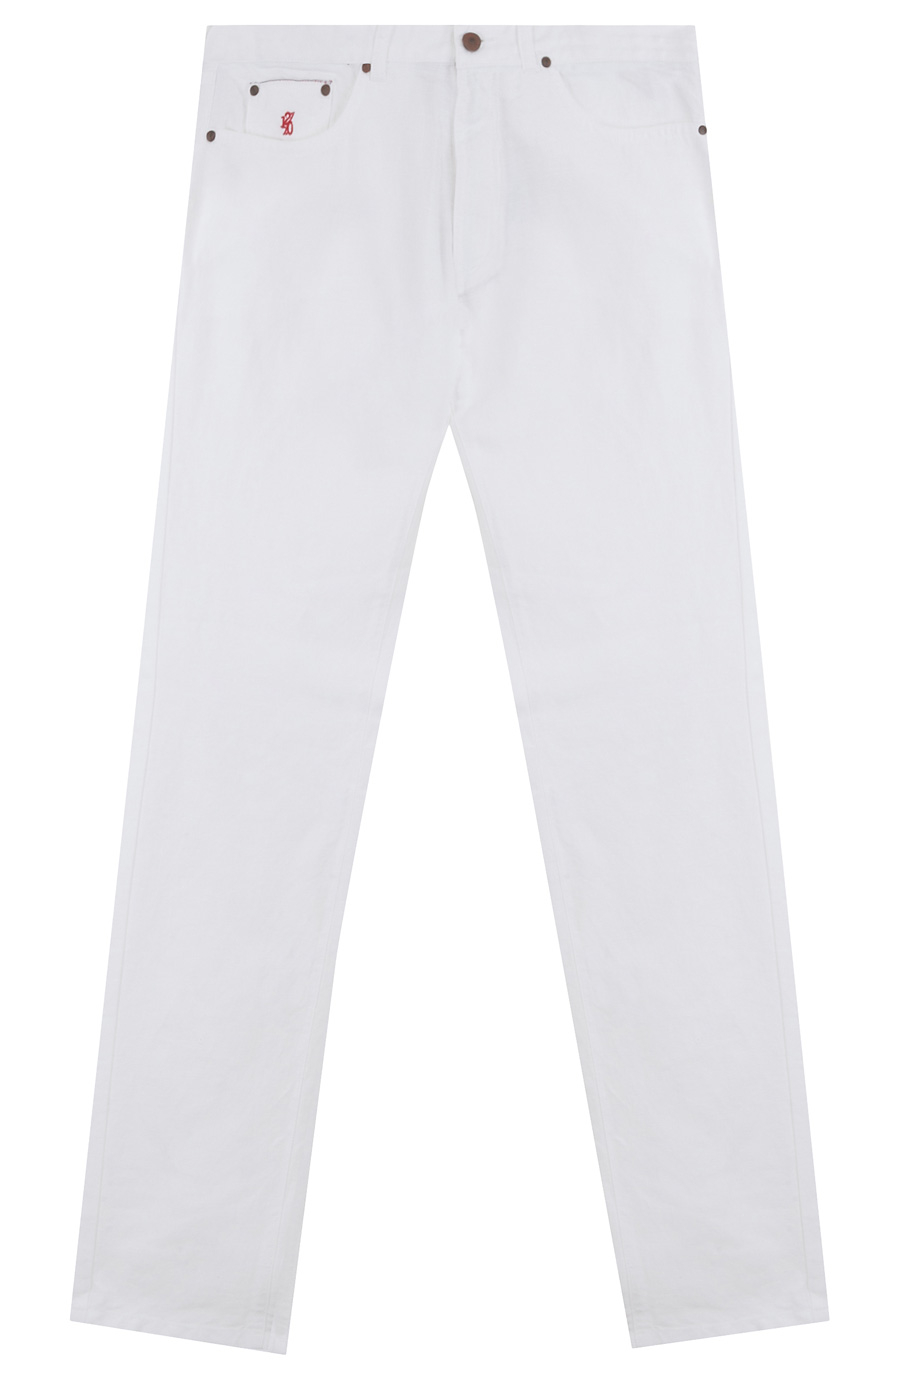 120% Lino Gabardine 5 Pocket Pant in White for Men - Lyst